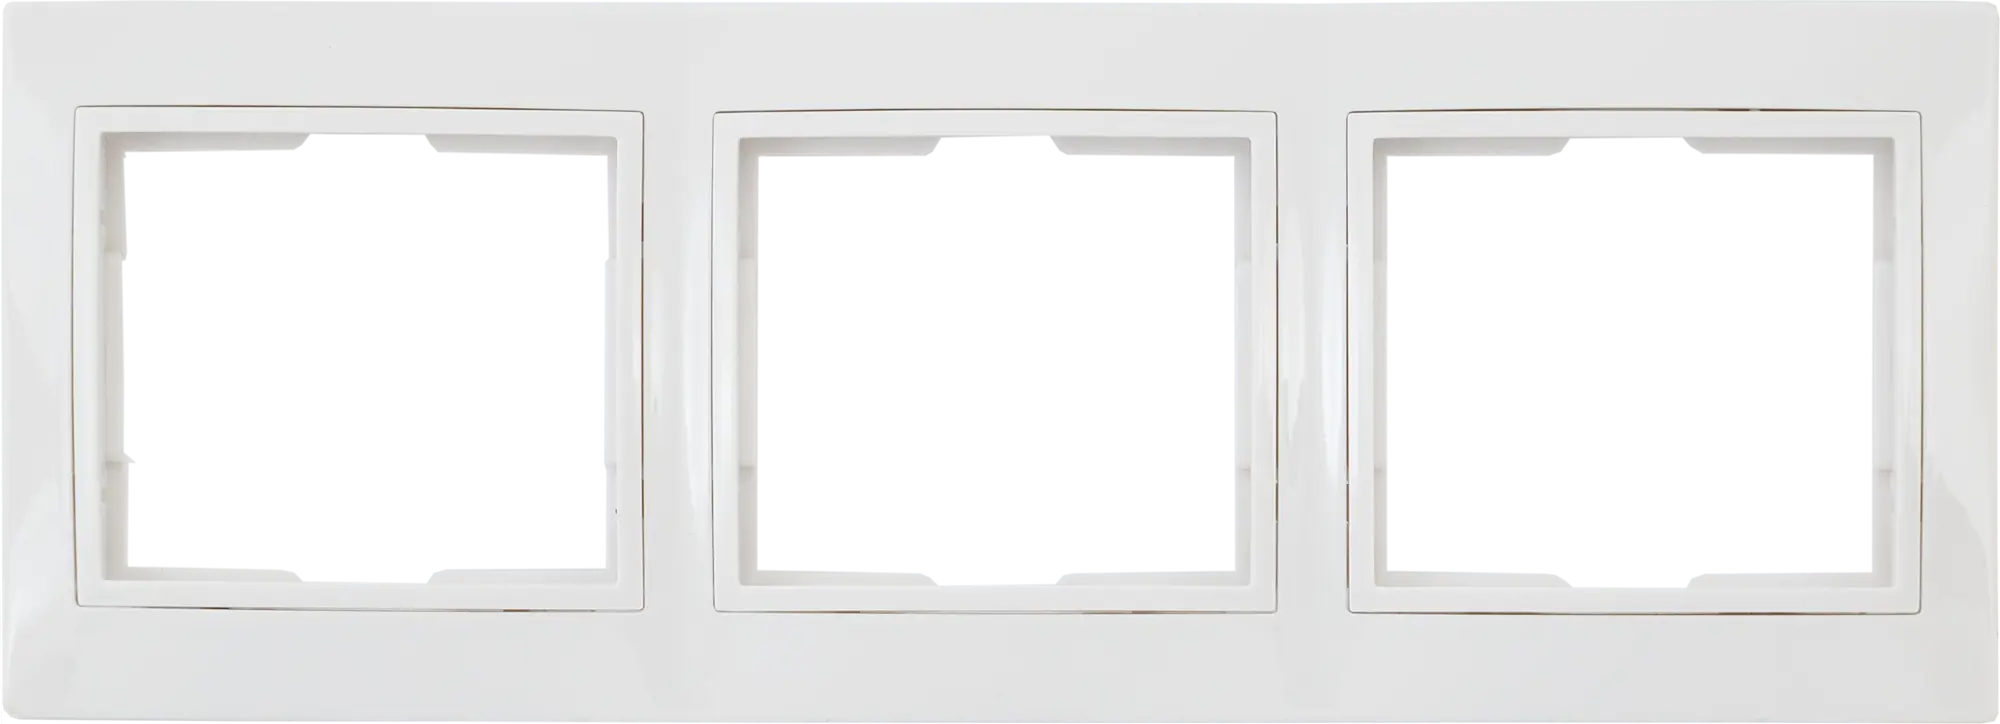 Рамка для розеток и выключателей горизонтальная Таймыр 3 поста, цвет белый горизонтальная рамка intro 150205 на 2 поста су plano антрацит б0044579